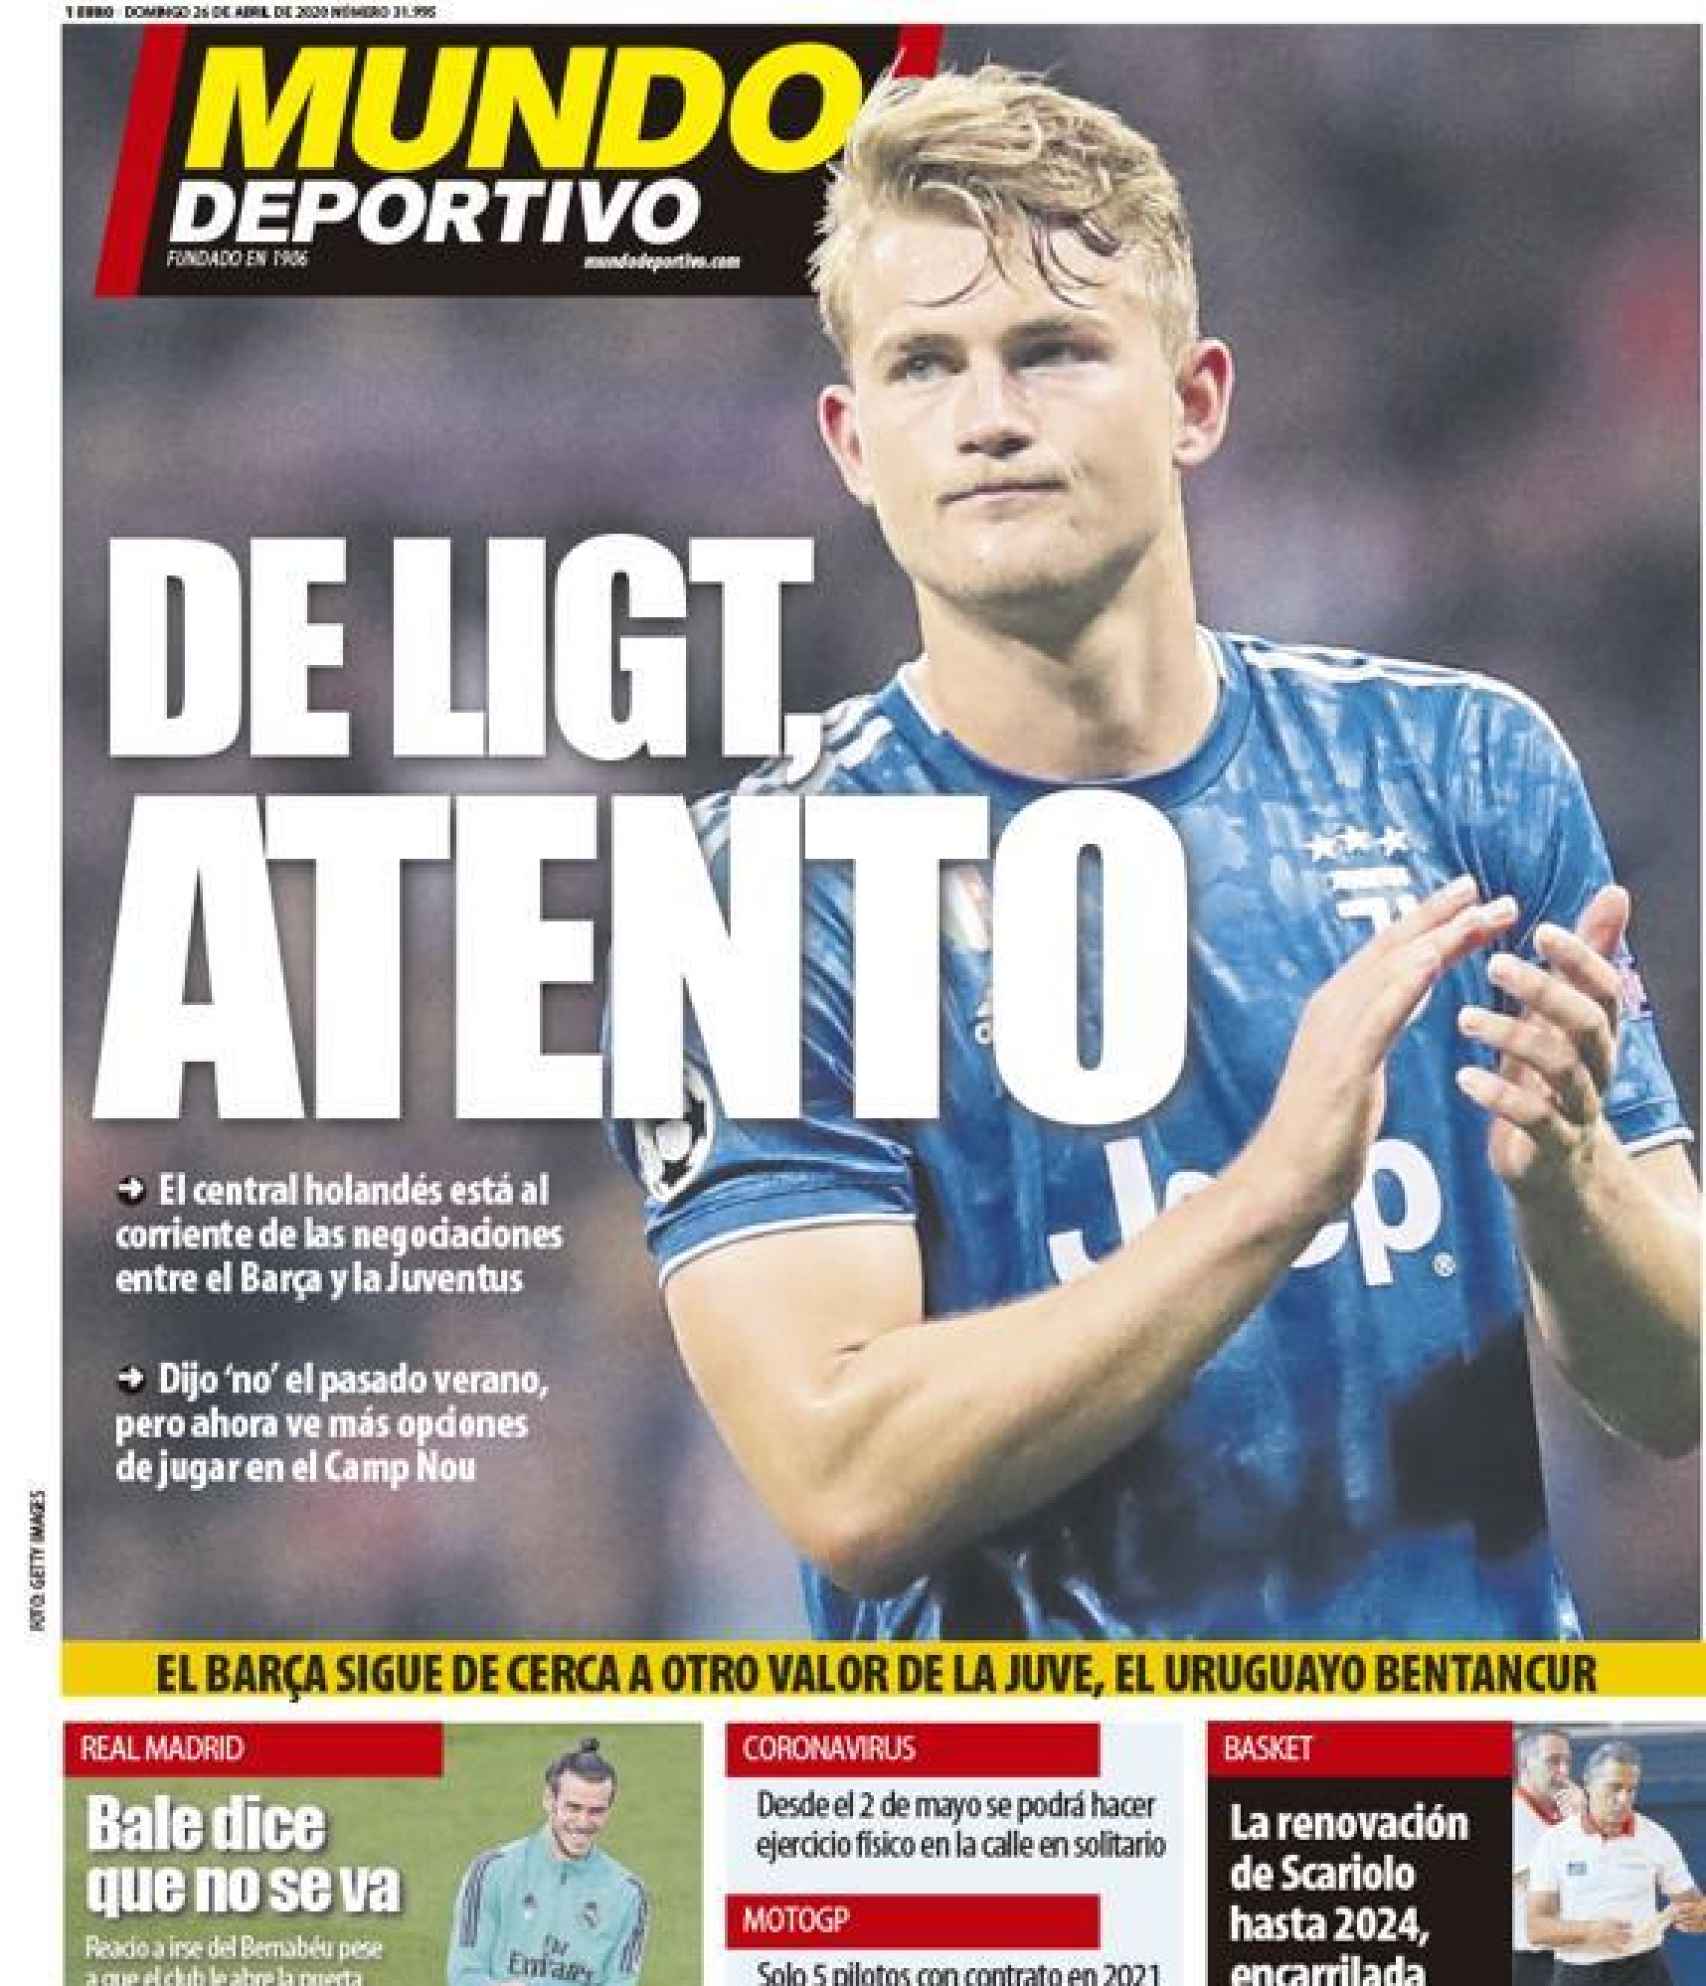 La portada del diario Mundo Deportivo (26/04/2020)